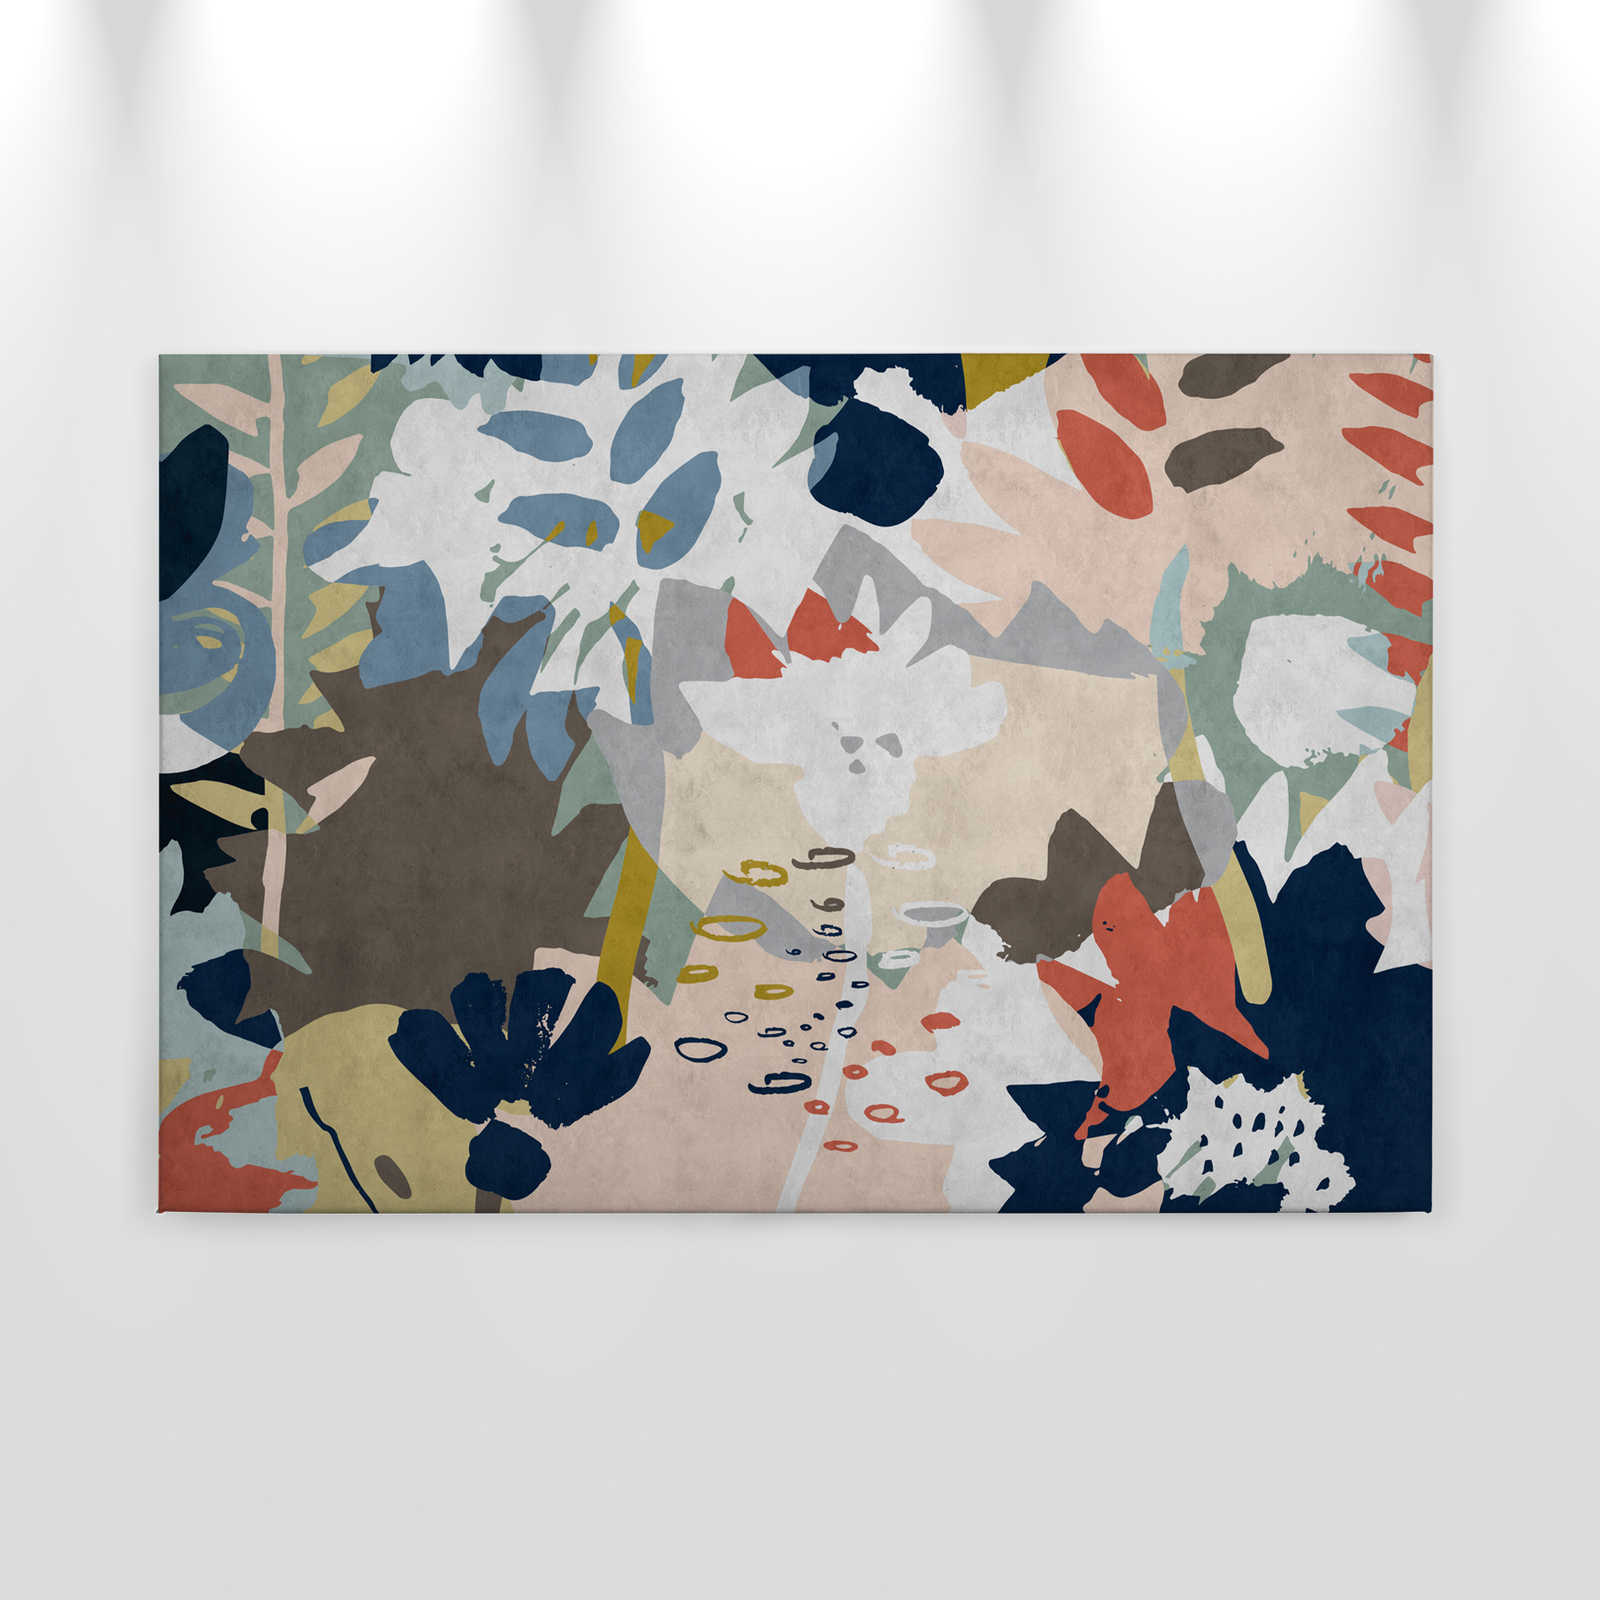             Collage floral 4 - Pintura sobre lienzo con motivo de hojas de colores - estructura de papel secante - 0,90 m x 0,60 m
        